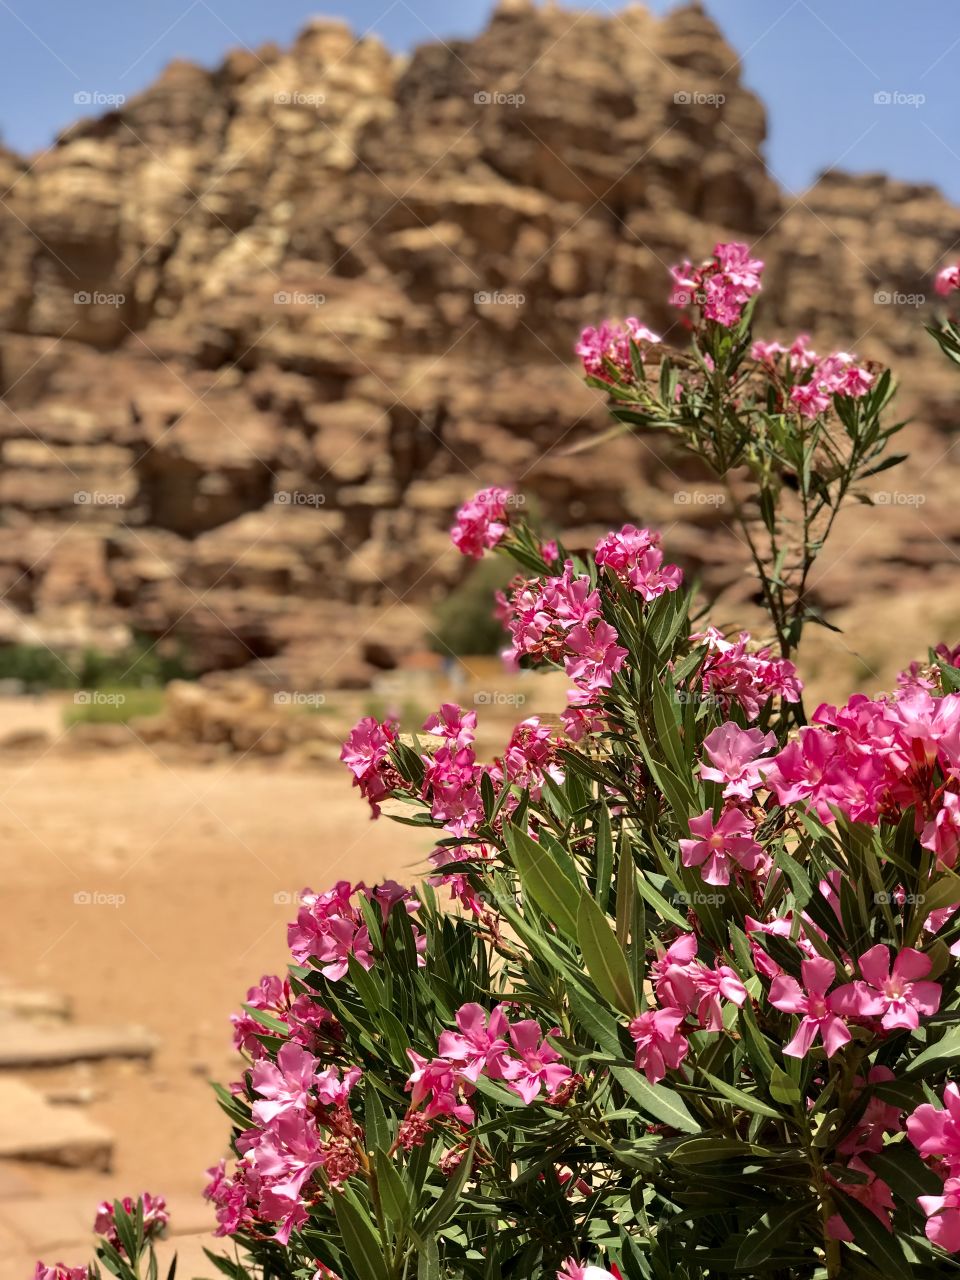 Flowers in the desert. Oleander. Petra. Jordan